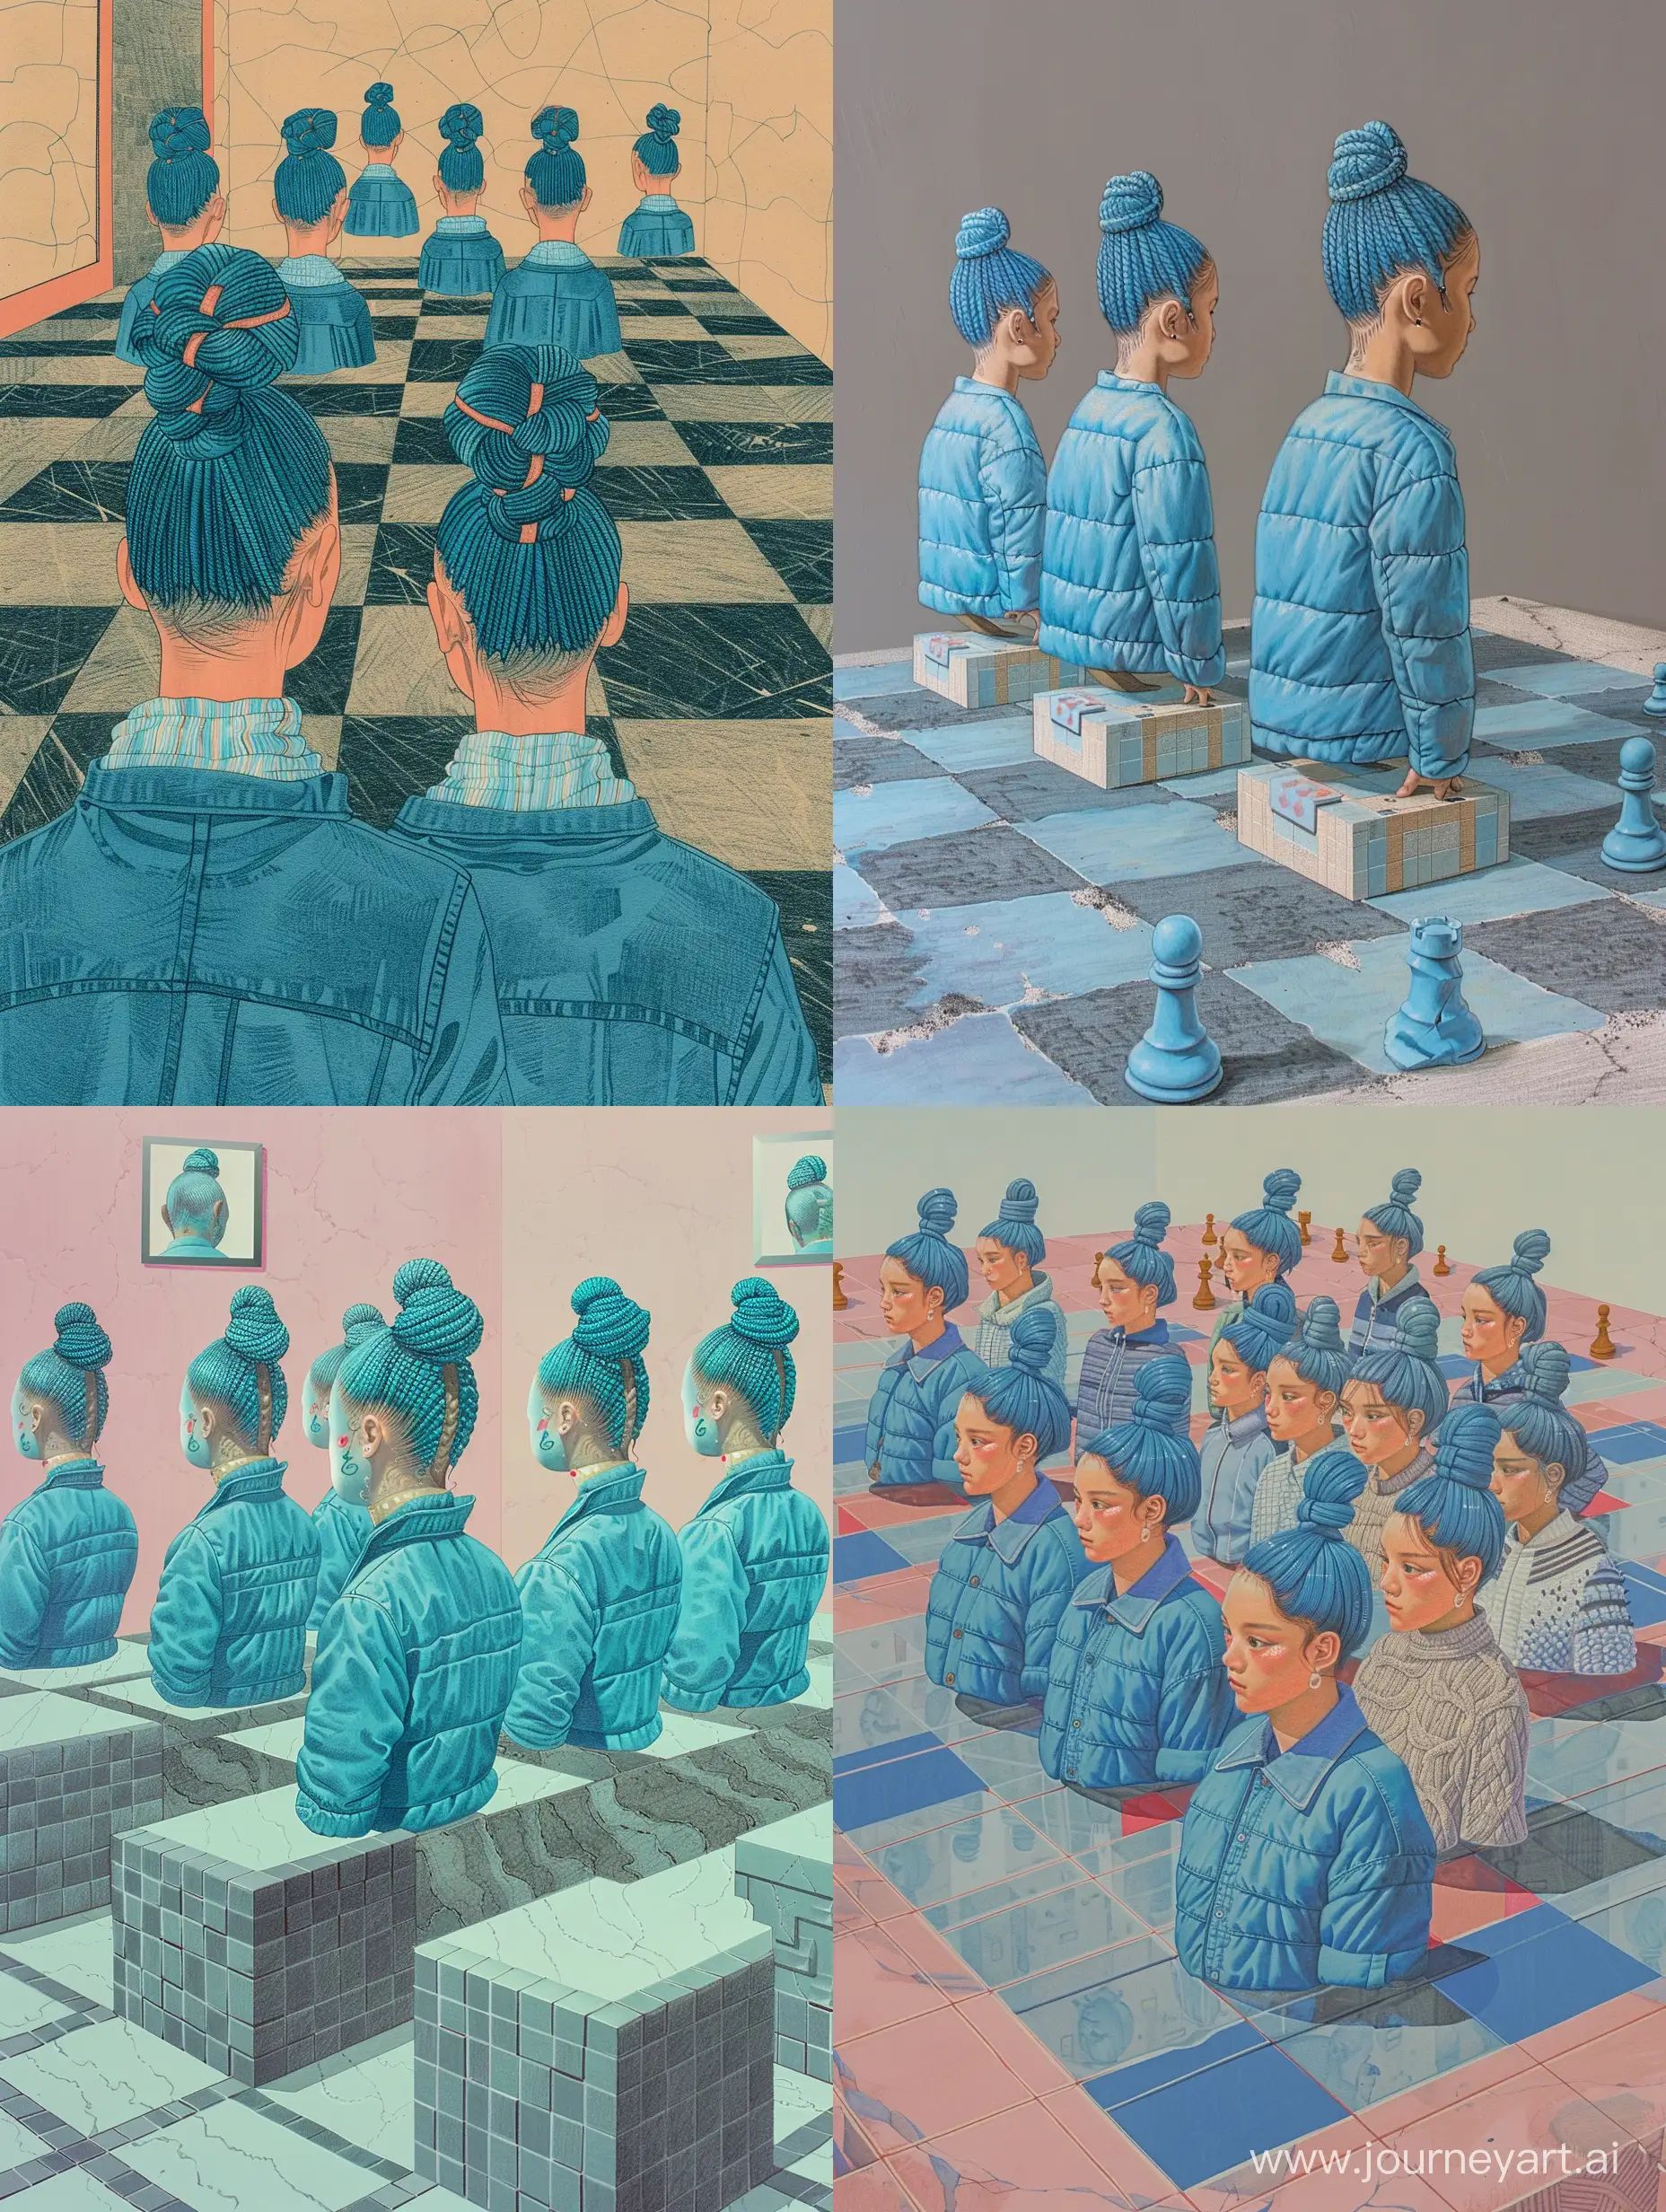 пустое пространство и доска игровая с клеточками, как шахматная, на клетках стоят одинаковые живые бюсты девушек, у них на голове мелкие синие косички собранные в пучок, синяя куртка, качественный высокодетализированный рисунок, яркость, красочность, стирающаяся грань между реальностью и фантазией, фентази, абстрактный 